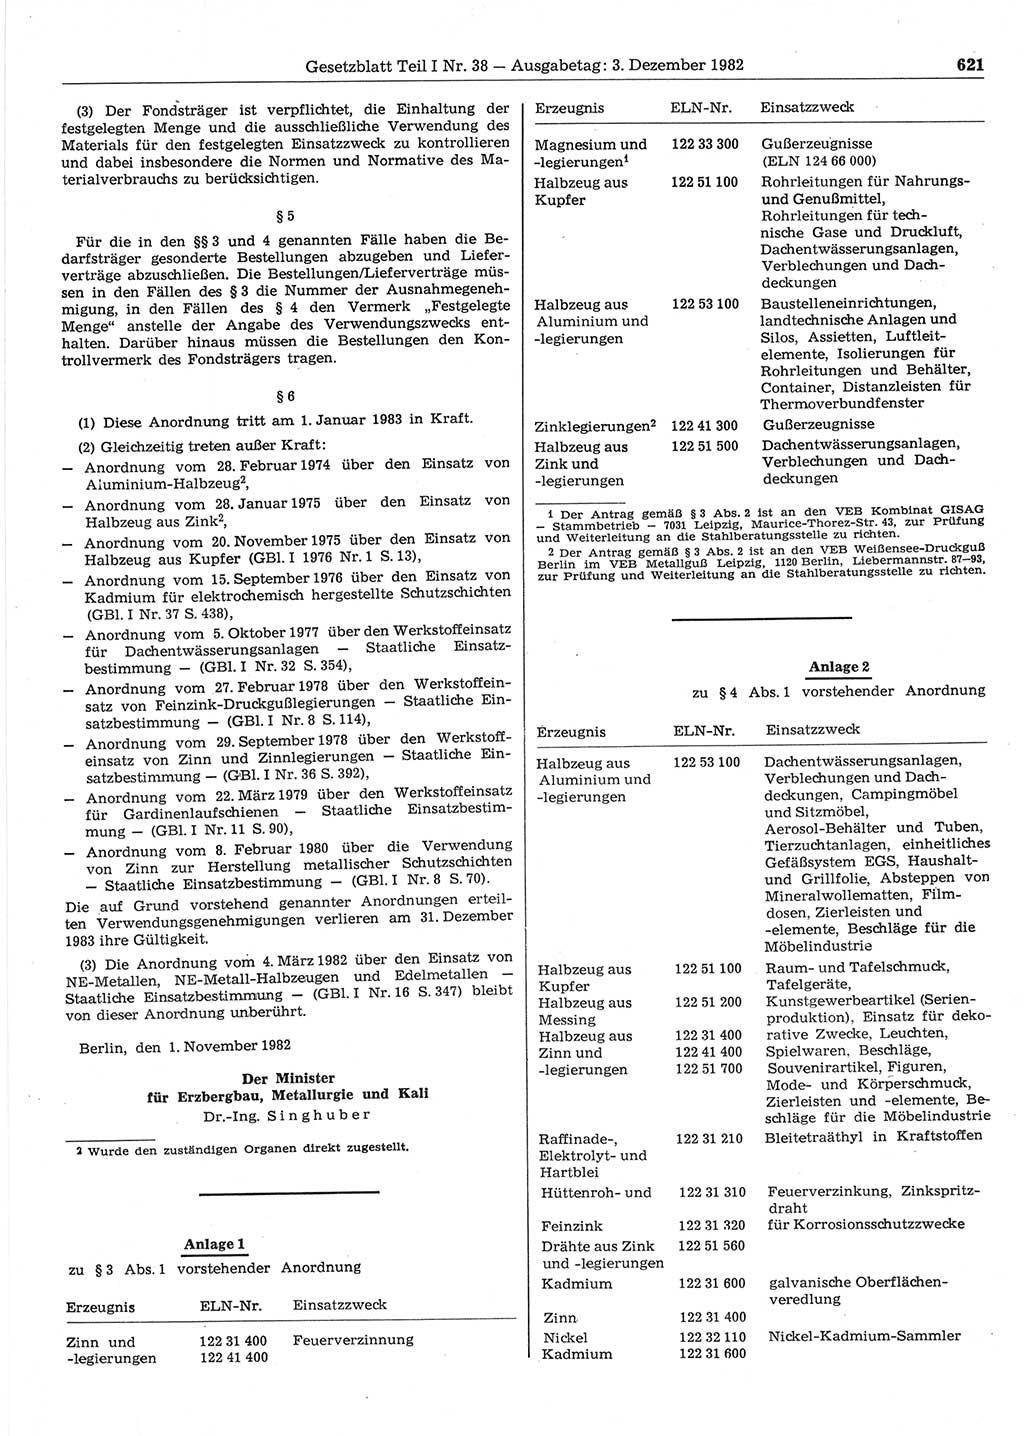 Gesetzblatt (GBl.) der Deutschen Demokratischen Republik (DDR) Teil Ⅰ 1982, Seite 621 (GBl. DDR Ⅰ 1982, S. 621)